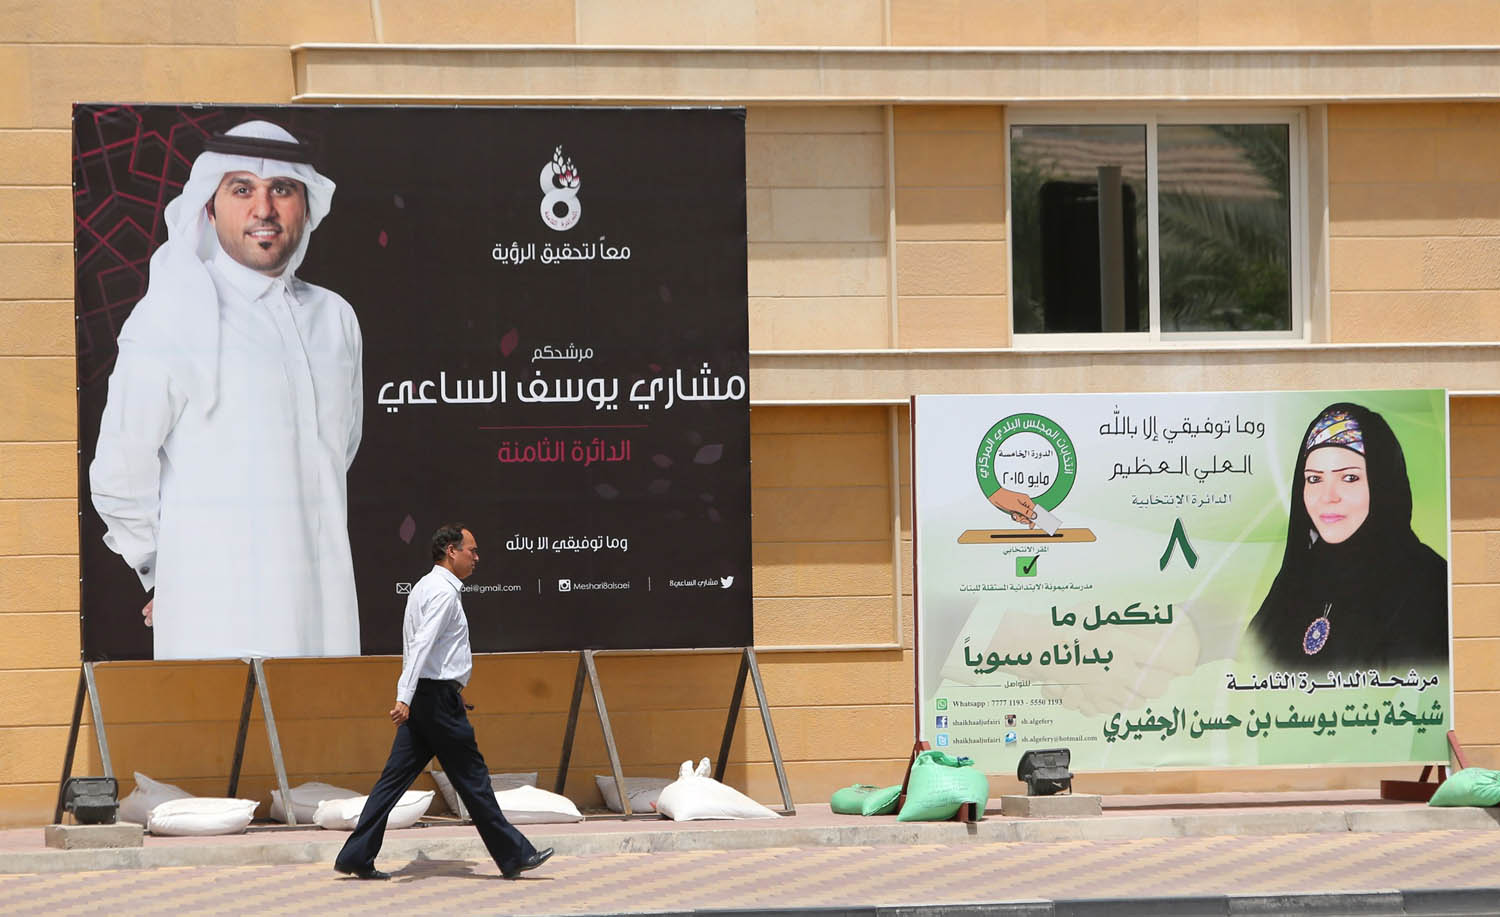 ملصقات في الدوحة عن مرشحين للمجلس البلدي عام 2016